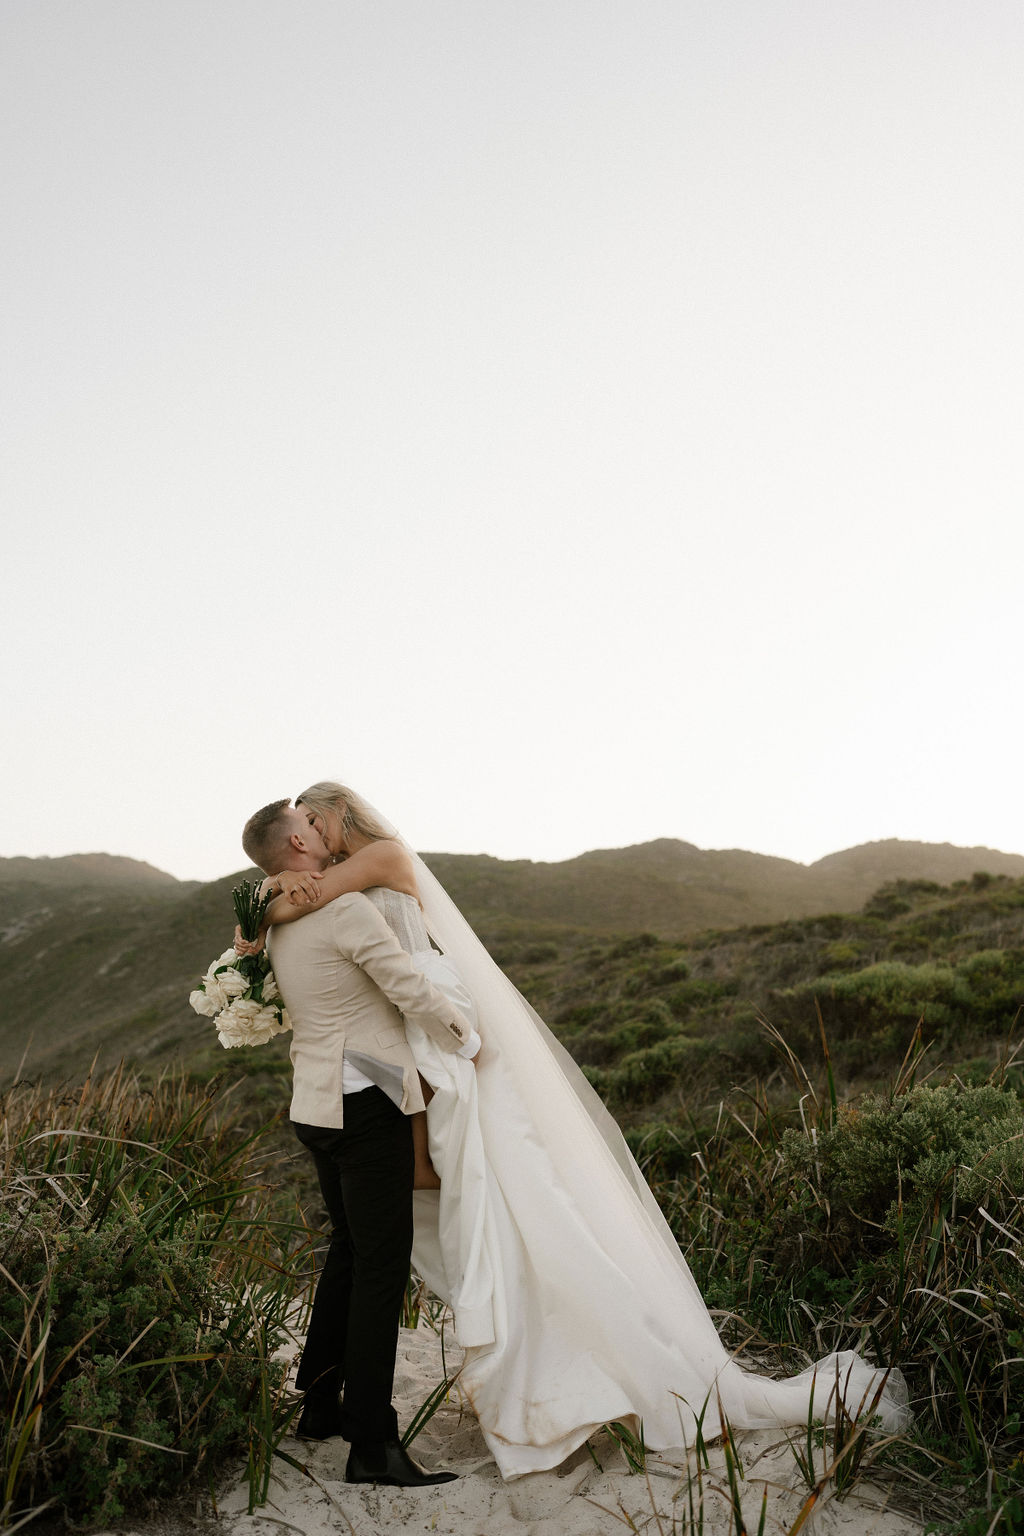 Alisha and Glenn's Parry Beach Breaks wedding captured by Sarah Tonkin